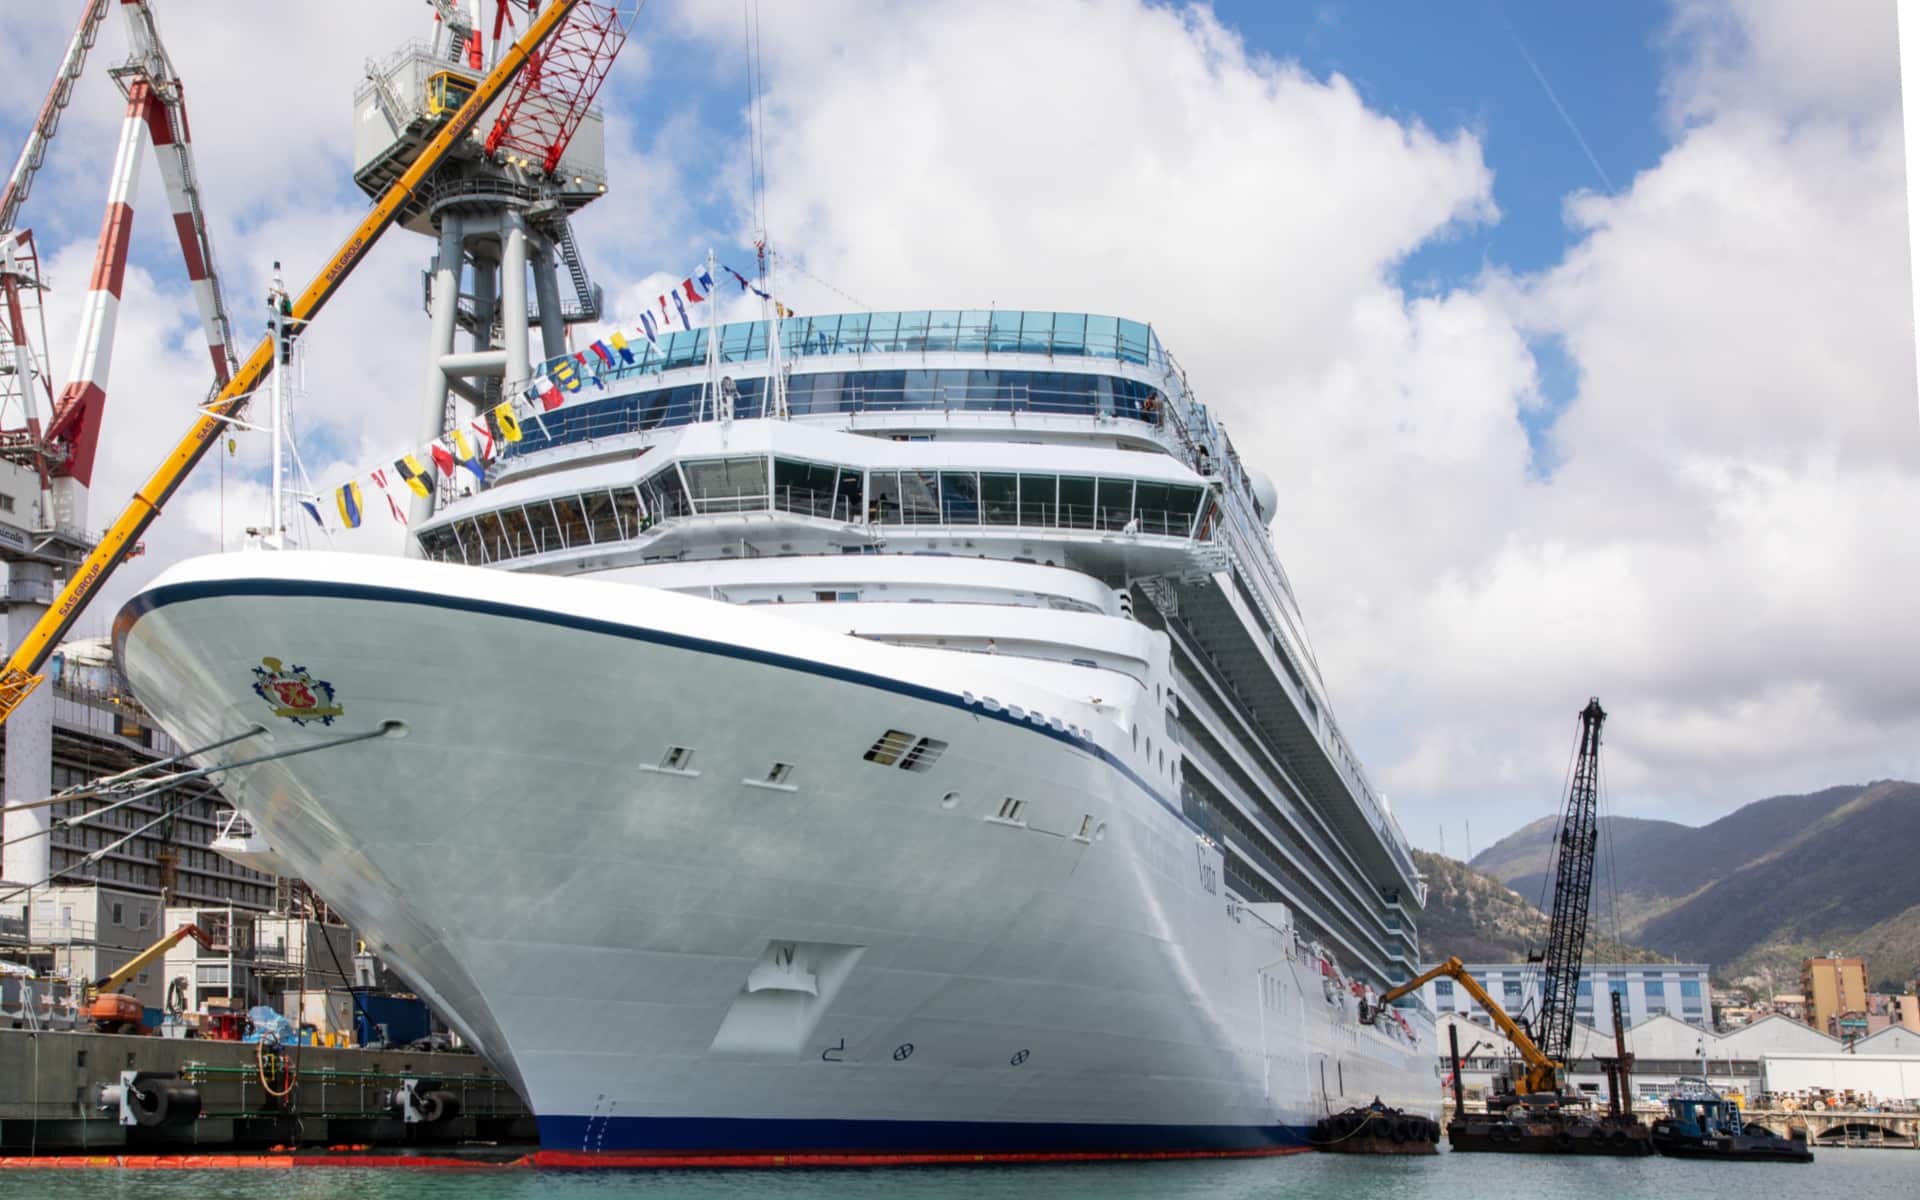 Oceania Cruises new Vista at the shipyard in Genoa, Italy.